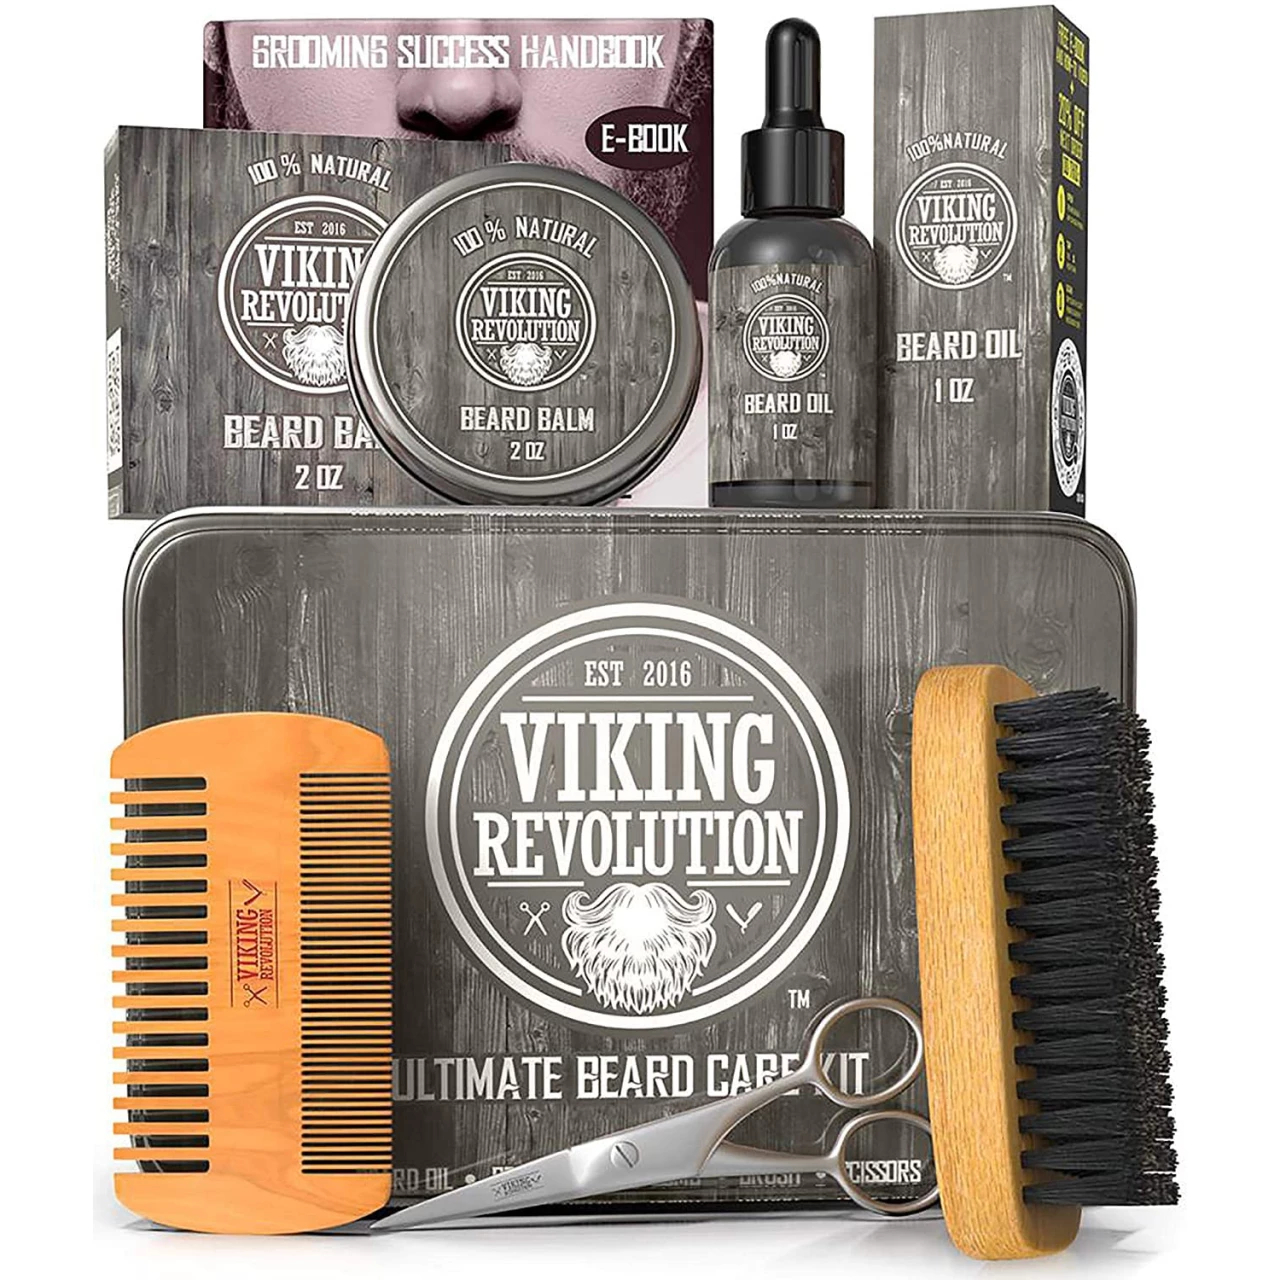 Viking Revolution Beard Care Kit for Men - Ultimate Beard Grooming Kit